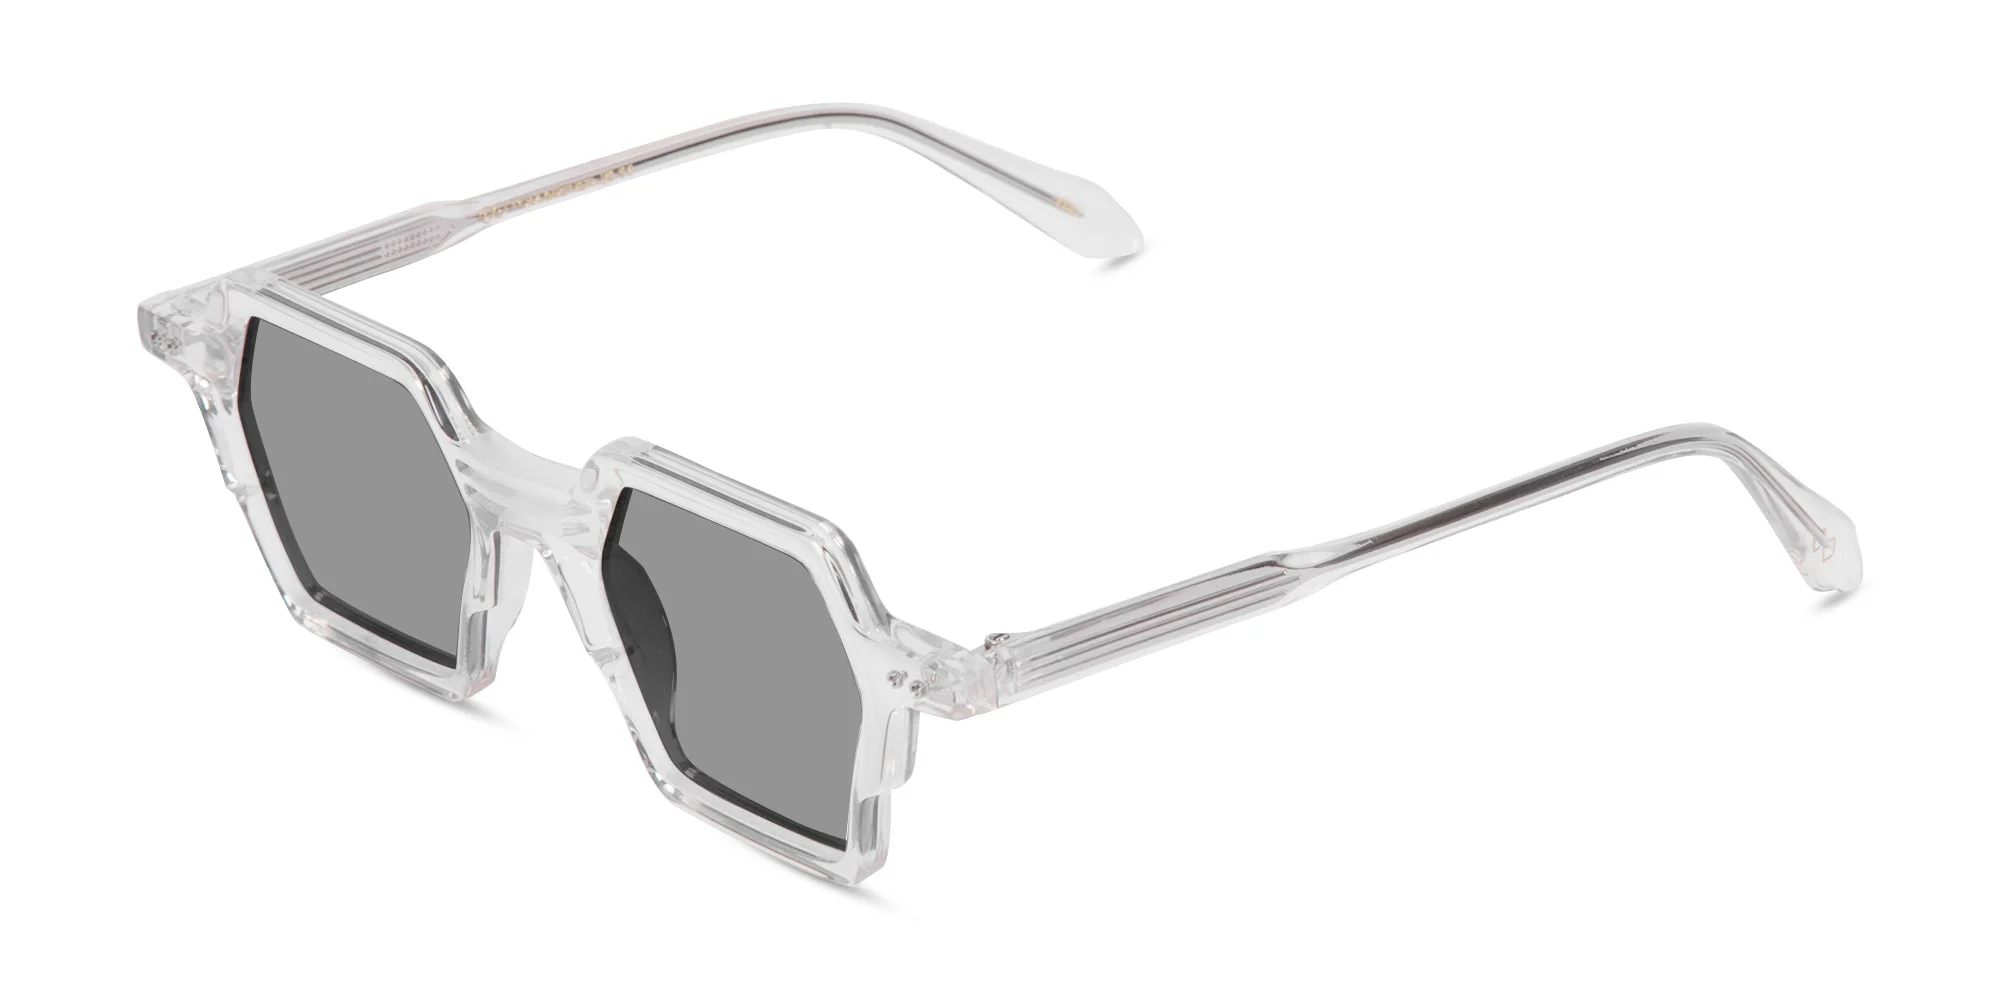 Clear Frame Sunglasses Polarized